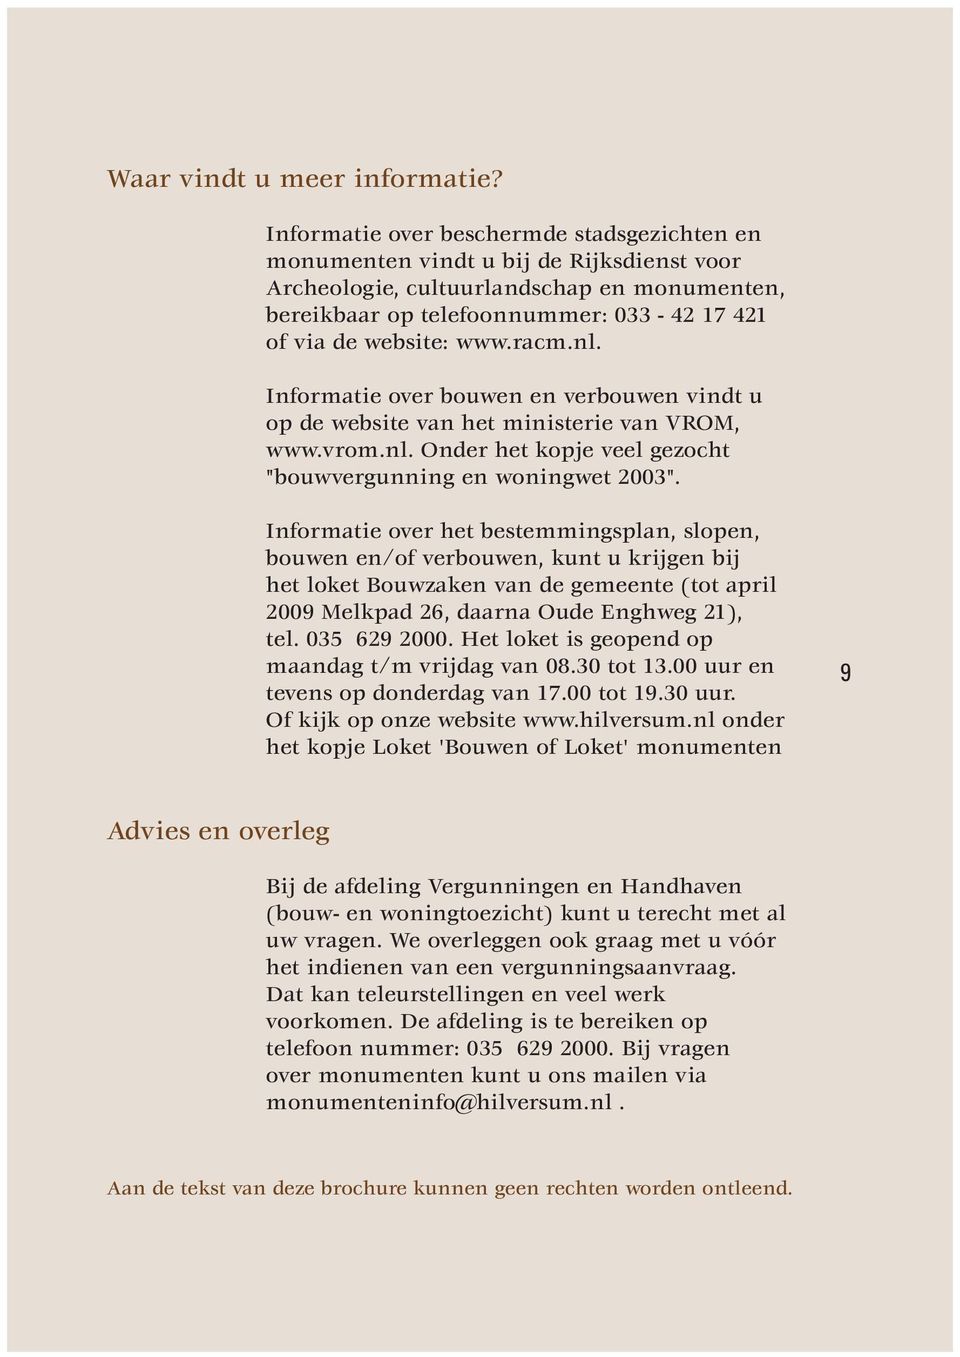 racm.nl. Informatie over bouwen en verbouwen vindt u op de website van het ministerie van VROM, www.vrom.nl. Onder het kopje veel gezocht "bouwvergunning en woningwet 2003".